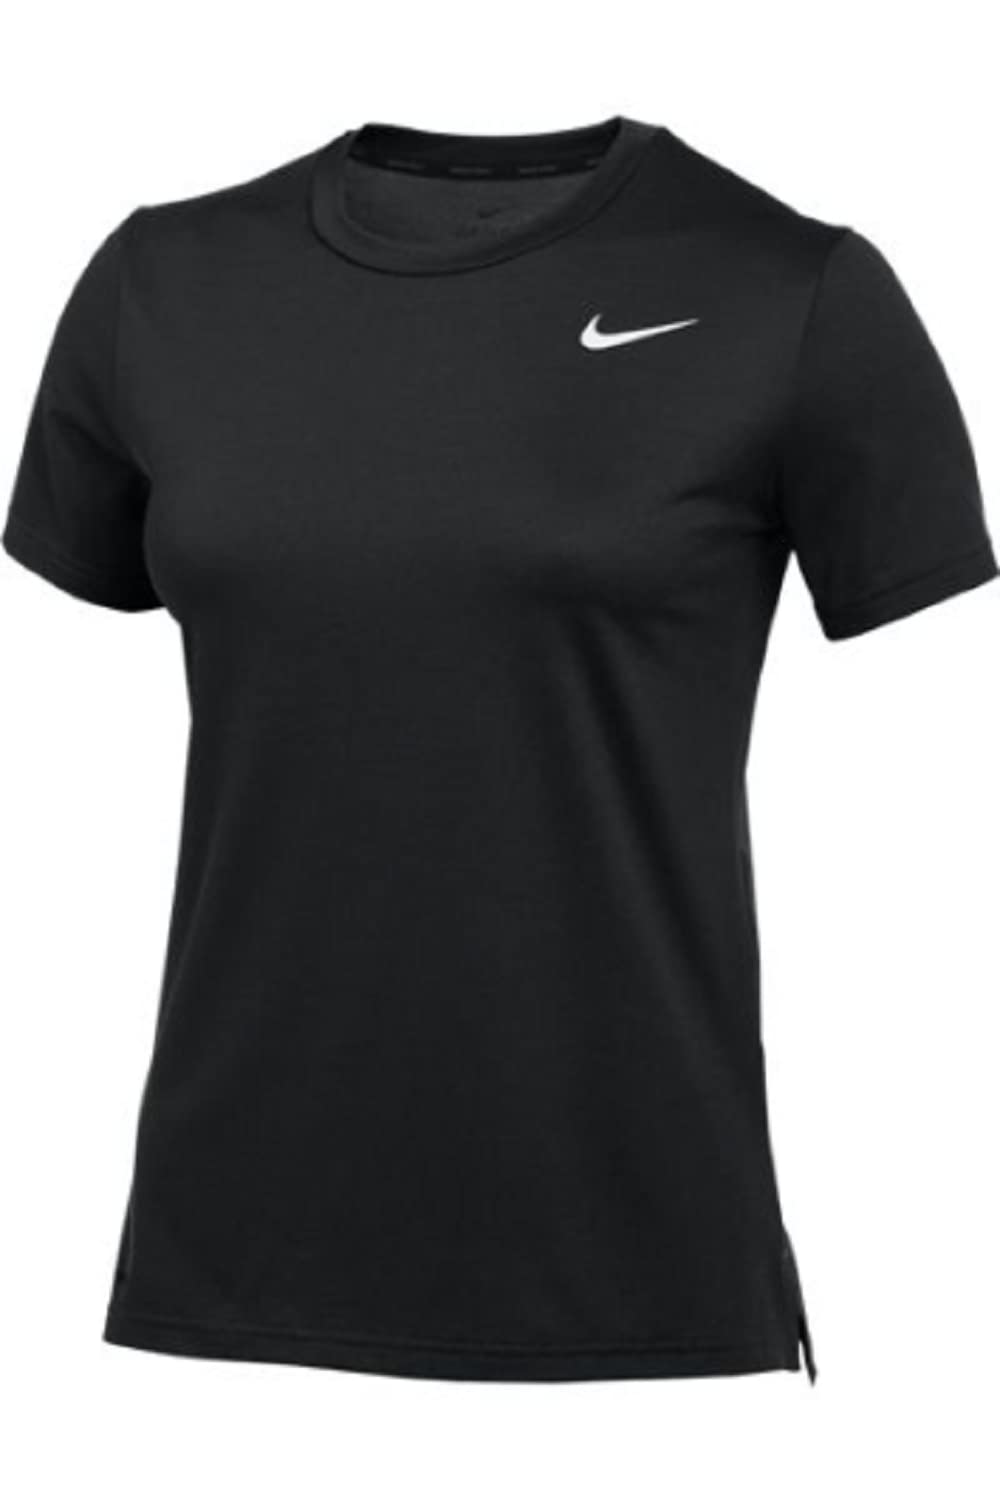 Nike Women's Team Hyper Dry Short Sleeve T-Shirt